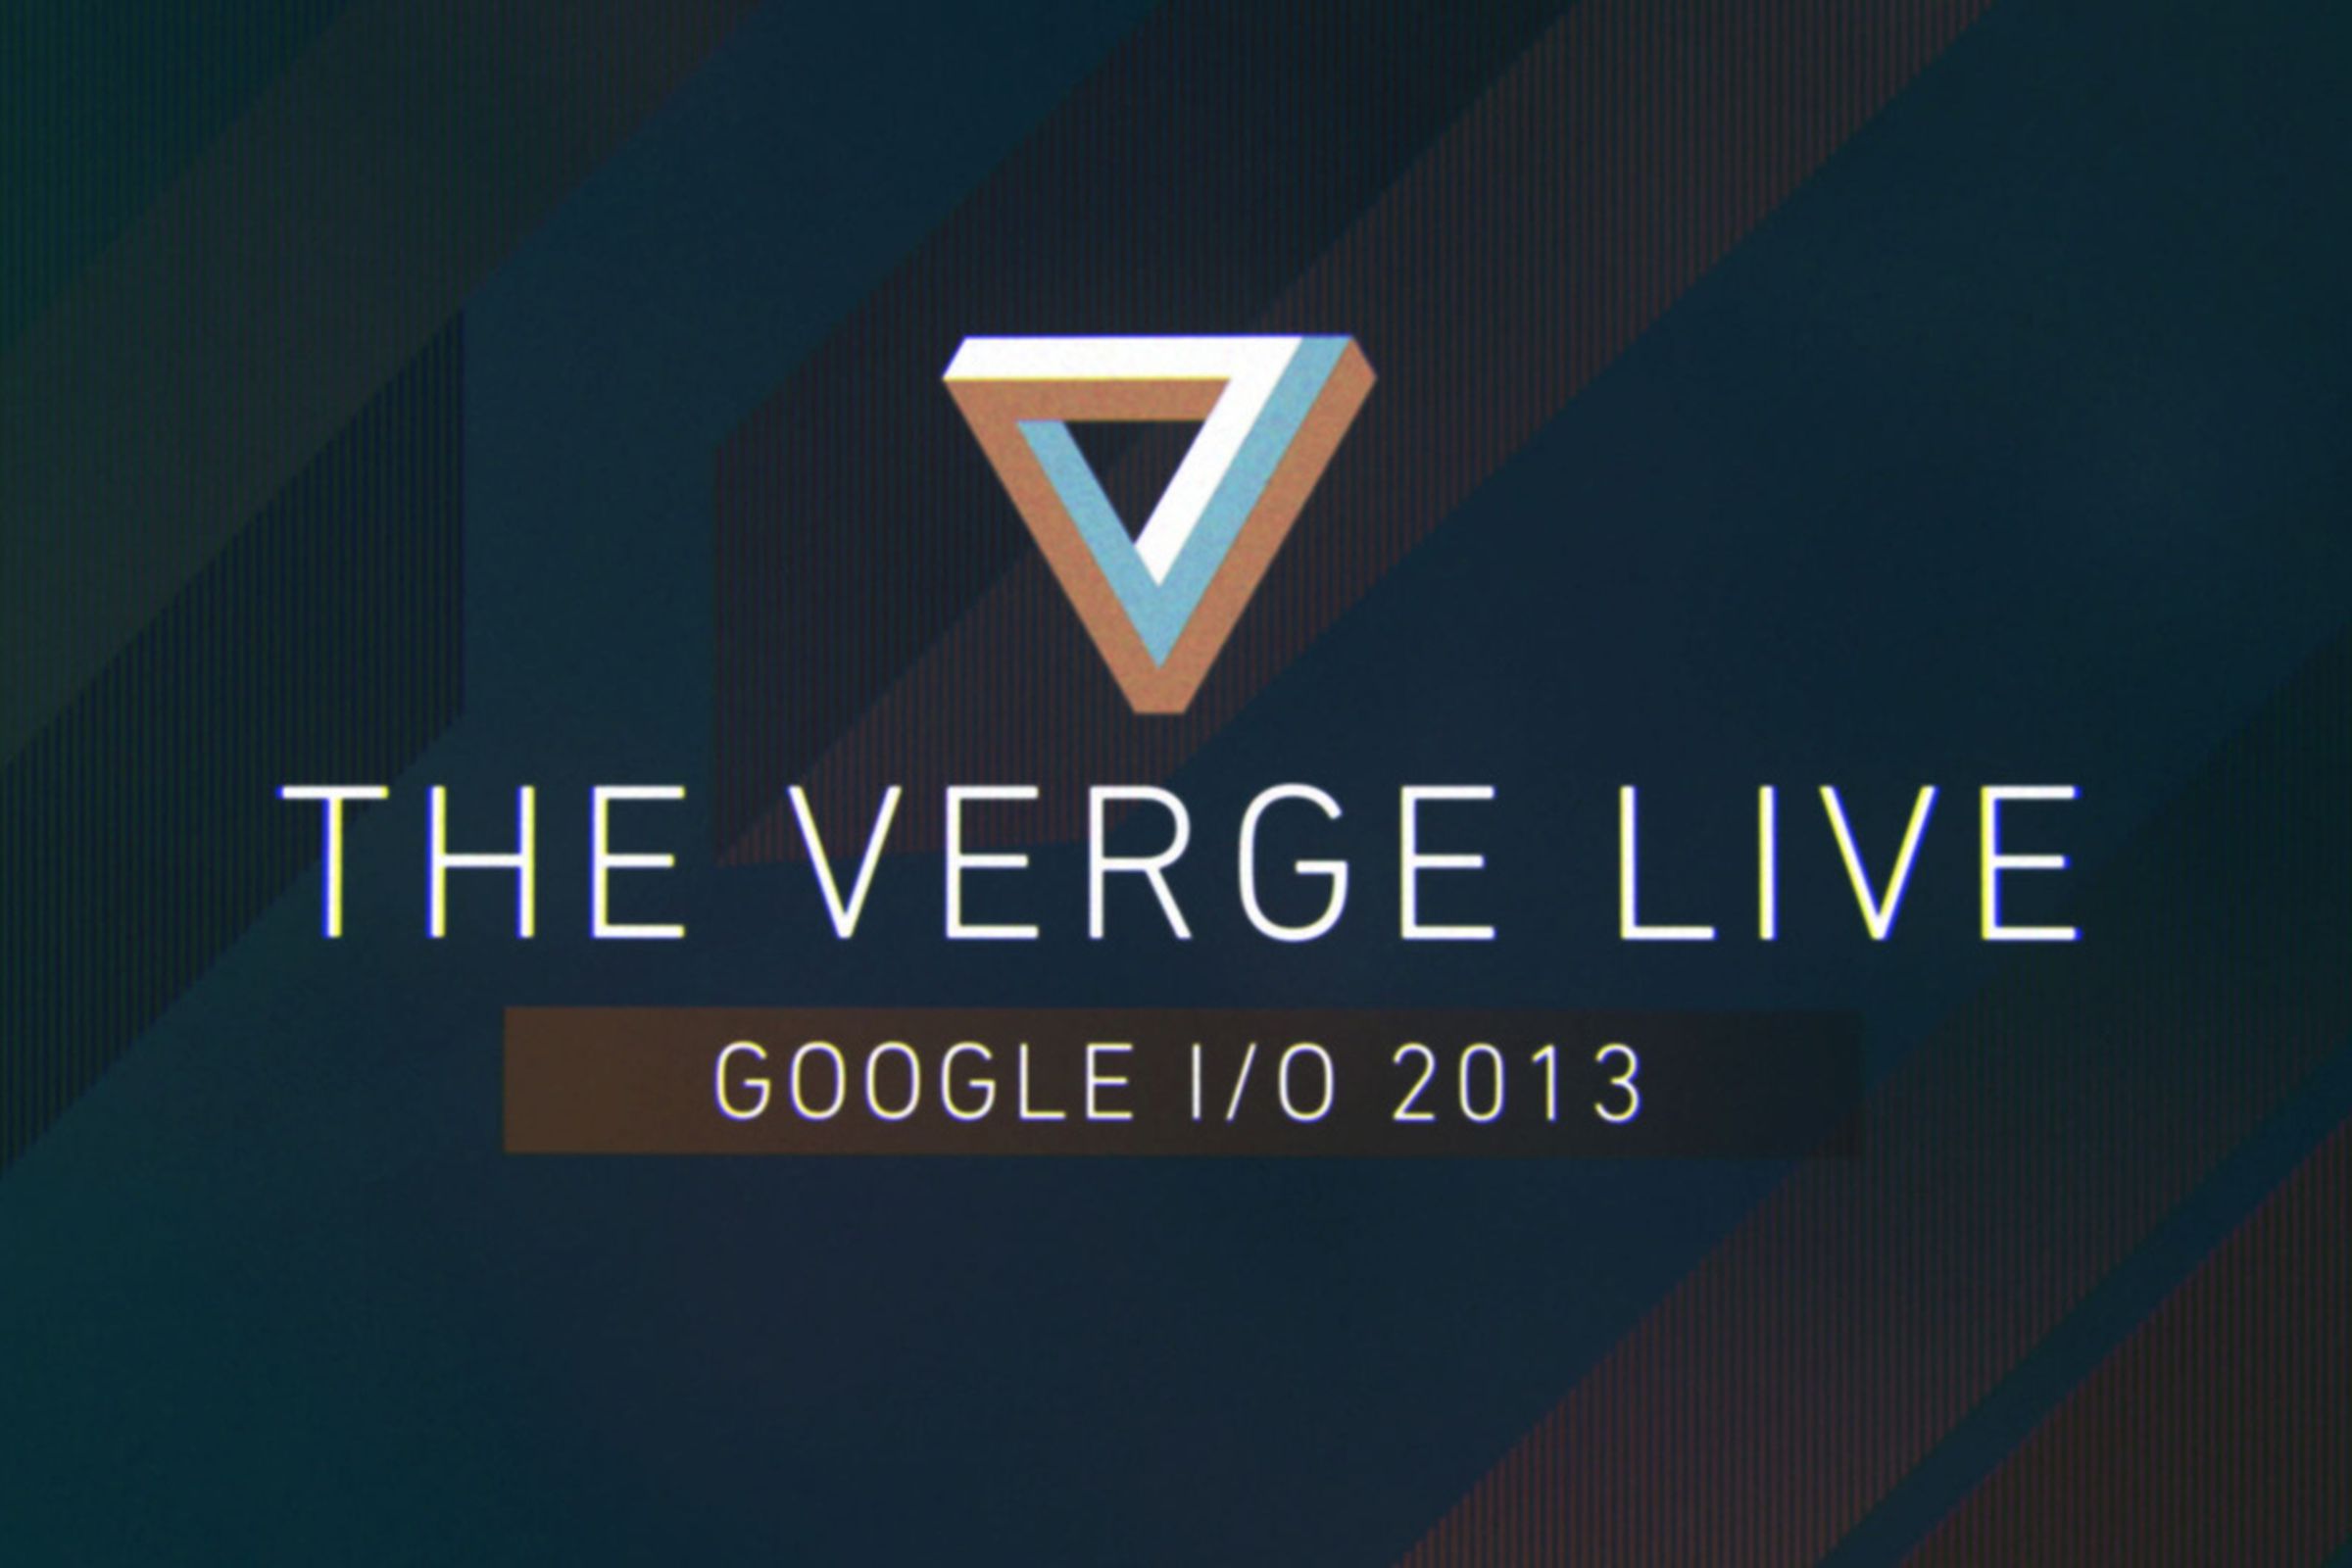 The Verge Live Google IO 2013